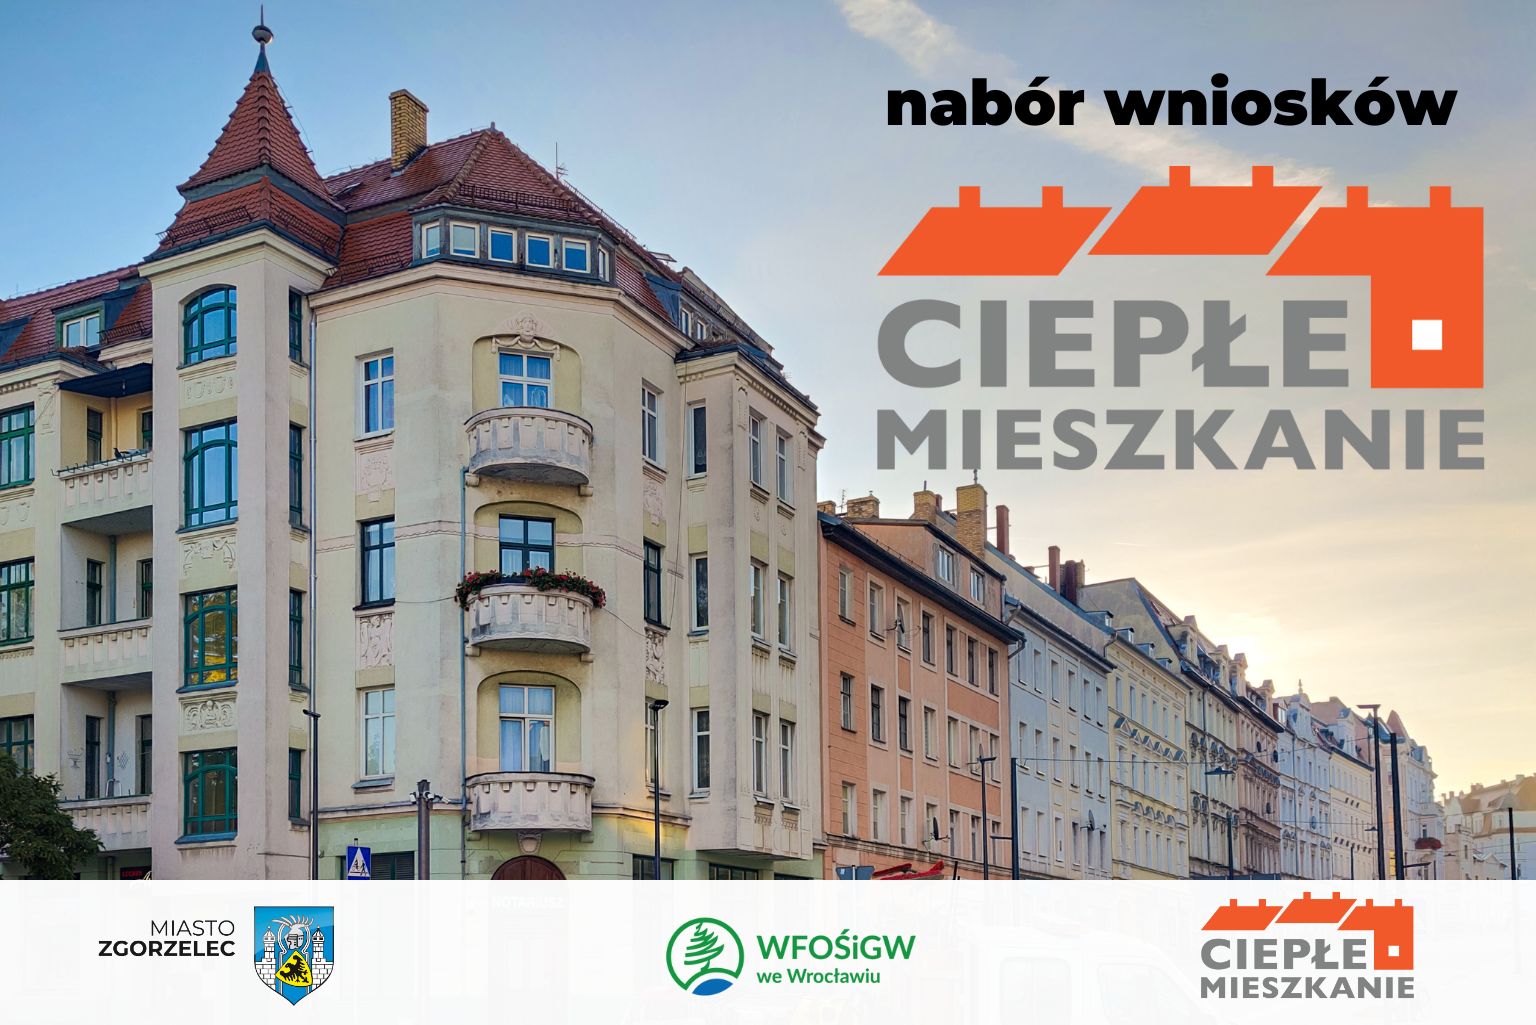 You are currently viewing Nabór wniosków w ramach Programu Ciepłe Mieszkanie